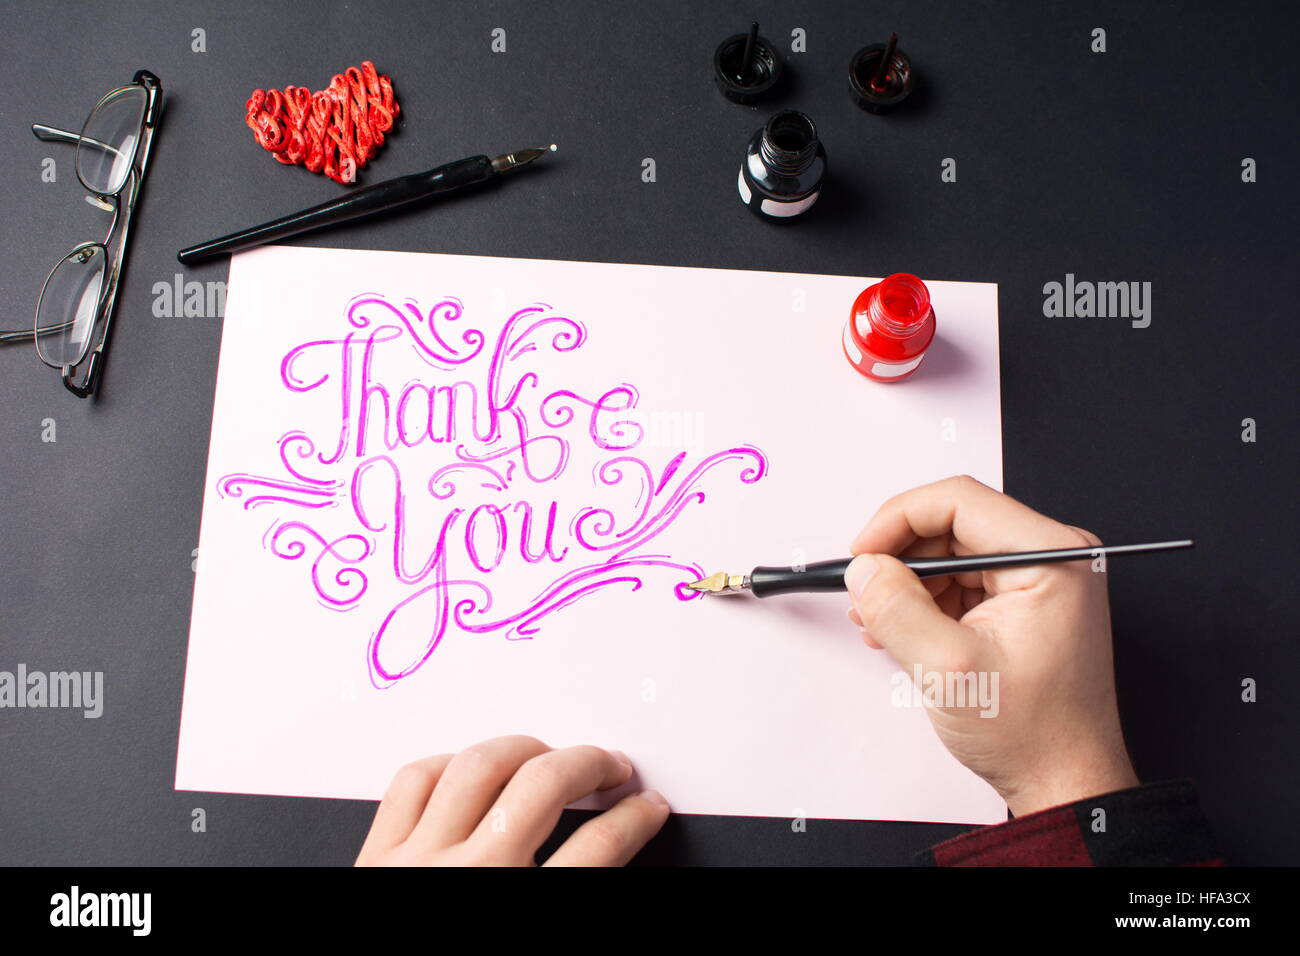 L'homme écrit une note de remerciement calligraphy Banque D'Images